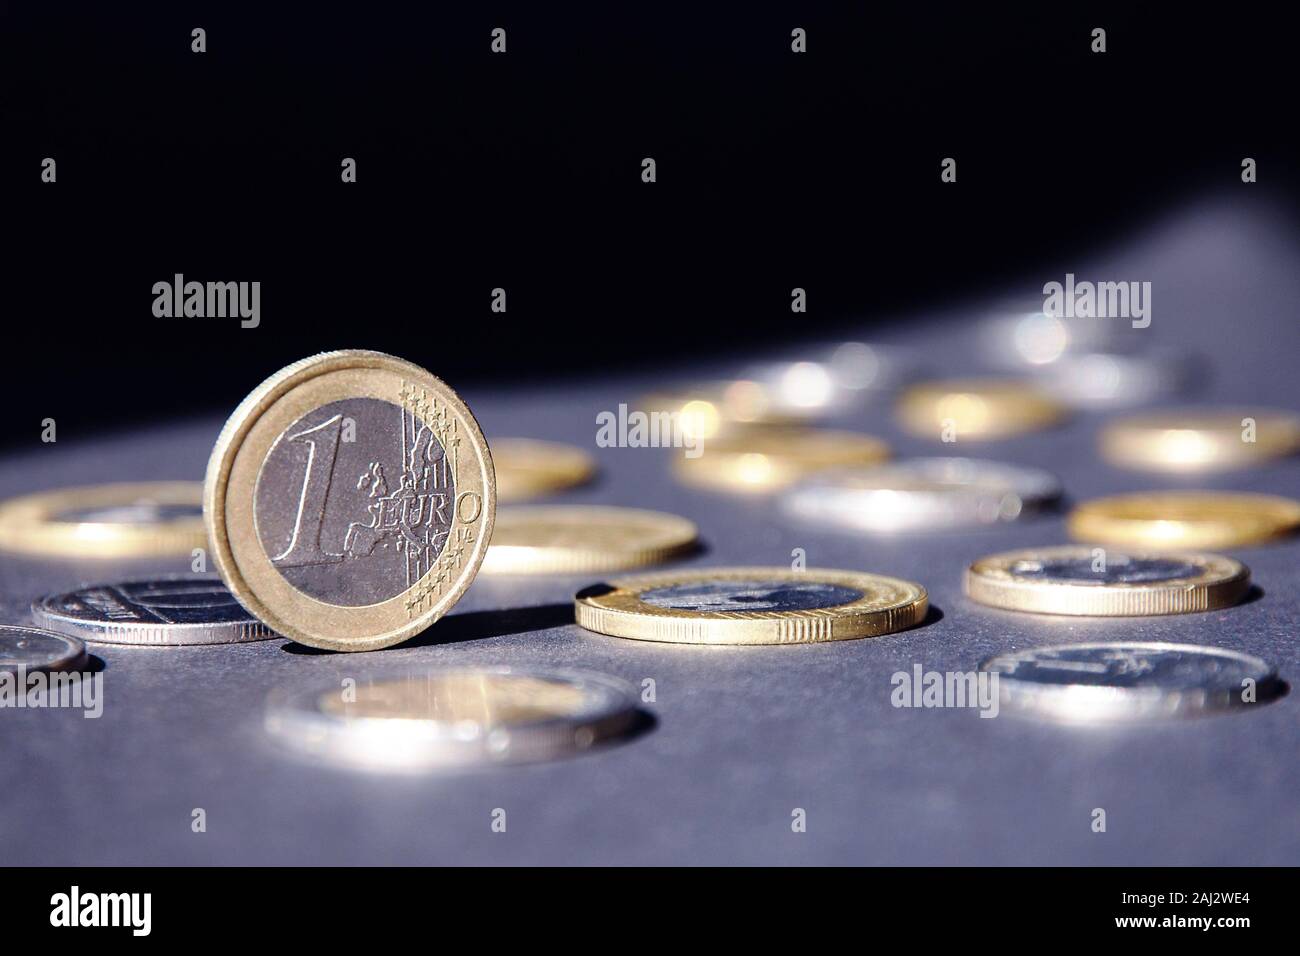 Ein Euro Münze auf der Kante shining in Spotlight, gegen viele verschiedene Münzen auf dunklem Hintergrund. Gelder fließen. Stockfoto